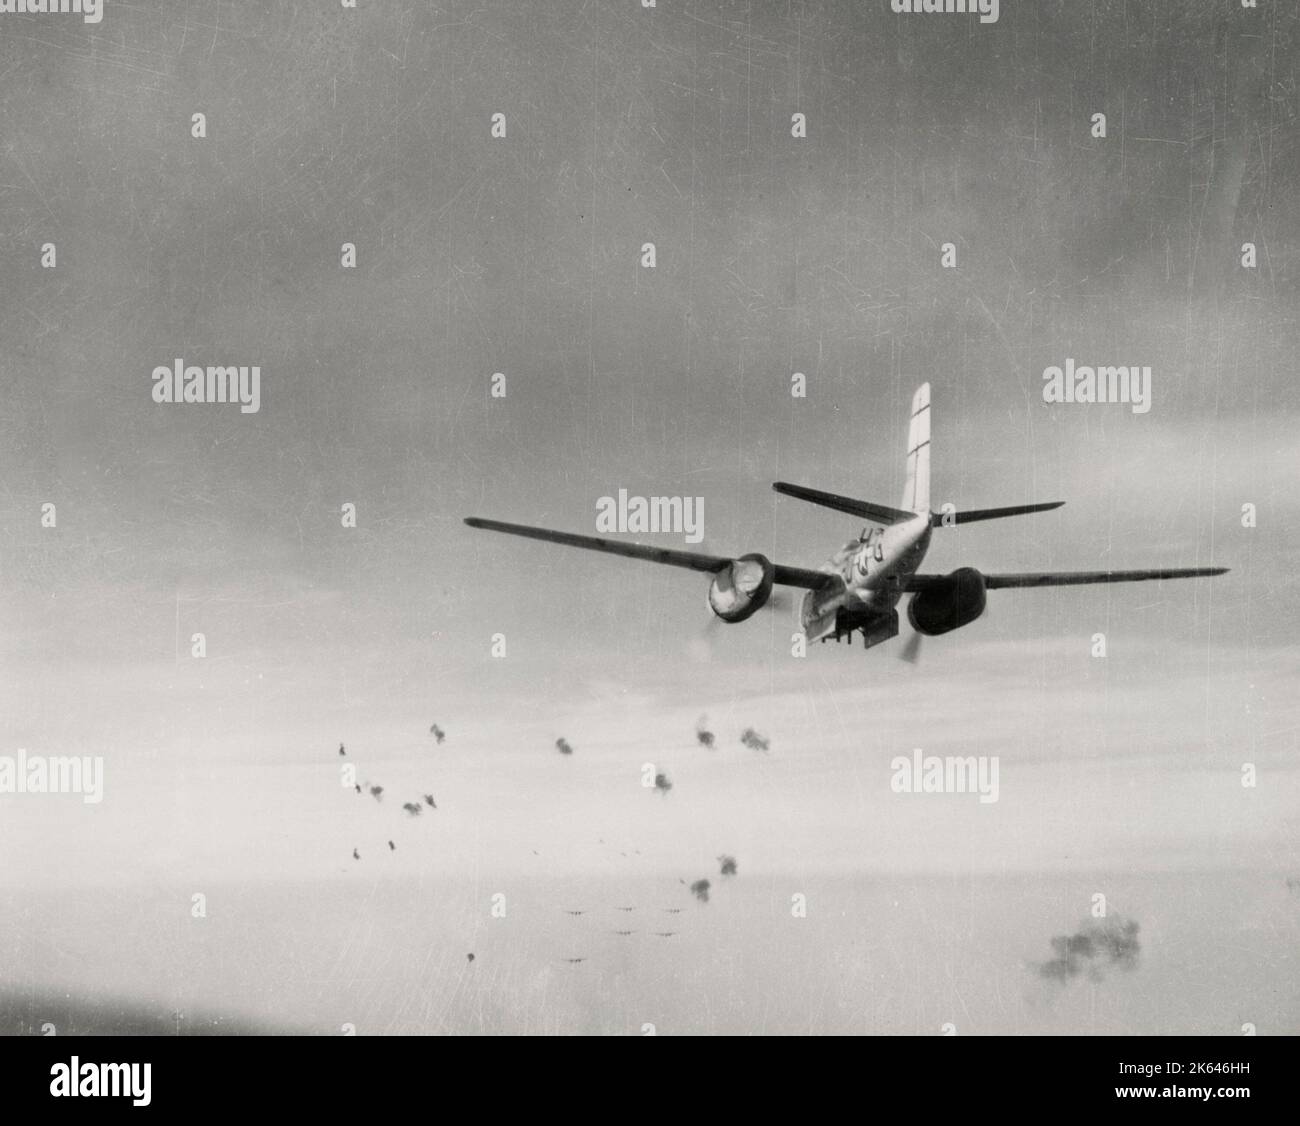 Fotografia d'epoca della seconda guerra mondiale - foto ufficiale militare degli Stati Uniti: Douglas A-25 il bombardiere Invader cade il suo carico, da qualche parte sulla Germania, aprile 1945. Foto Stock